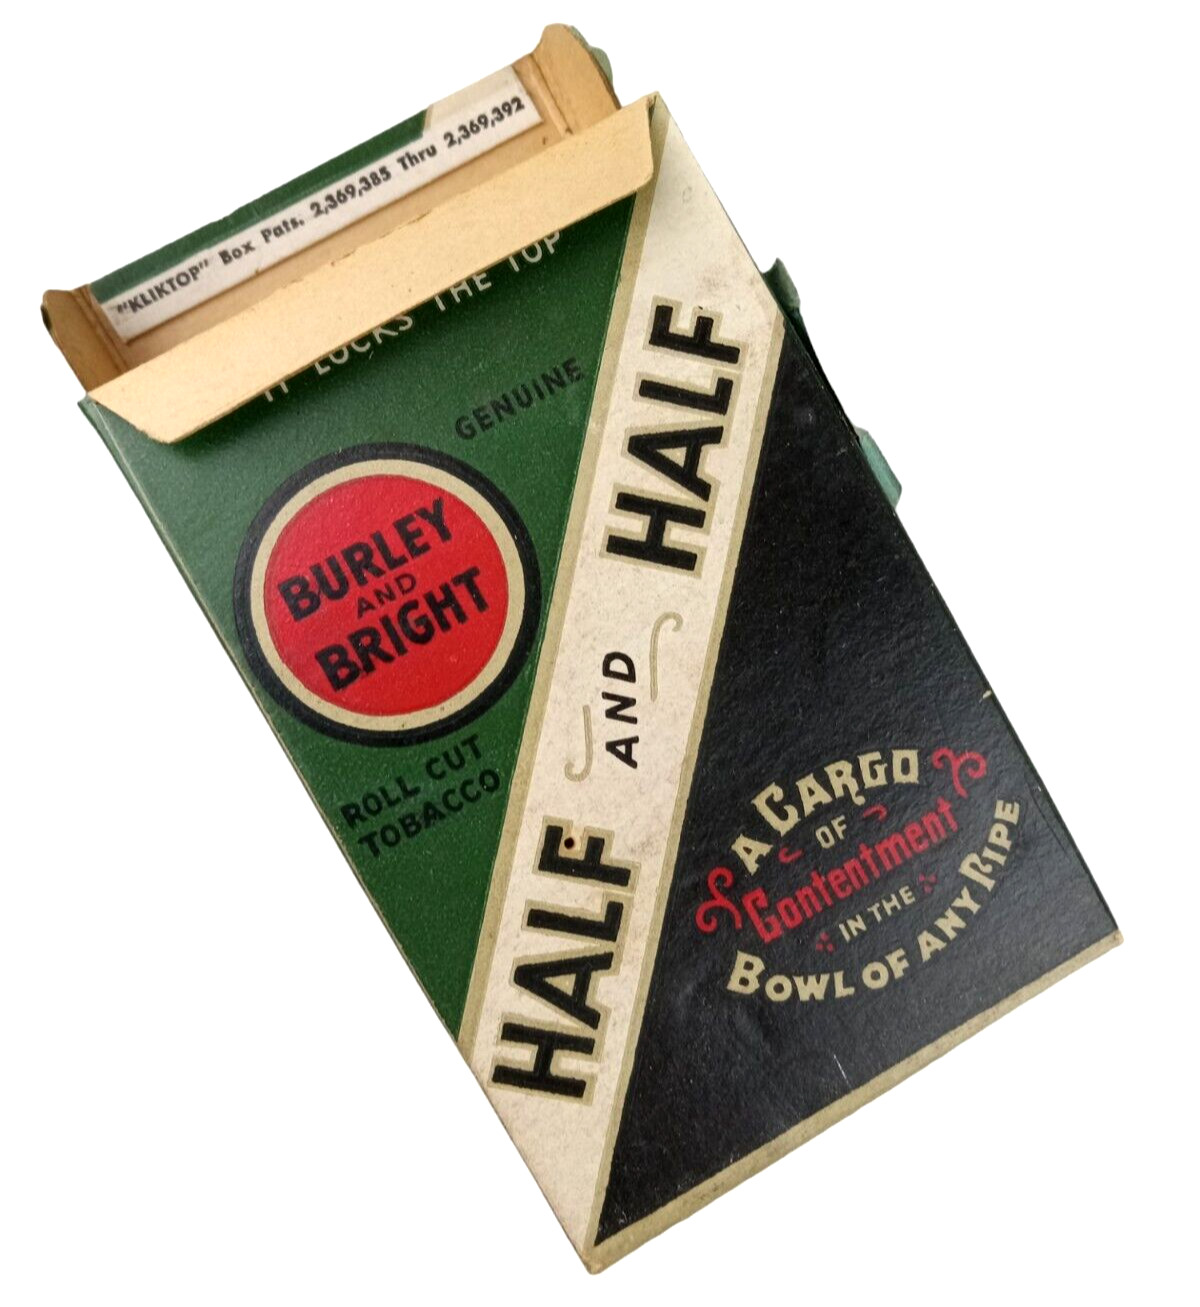 HALF AND HALF Kliktop Box Cardboard Tobacco Box EMPTY Vintage Advertising RARE